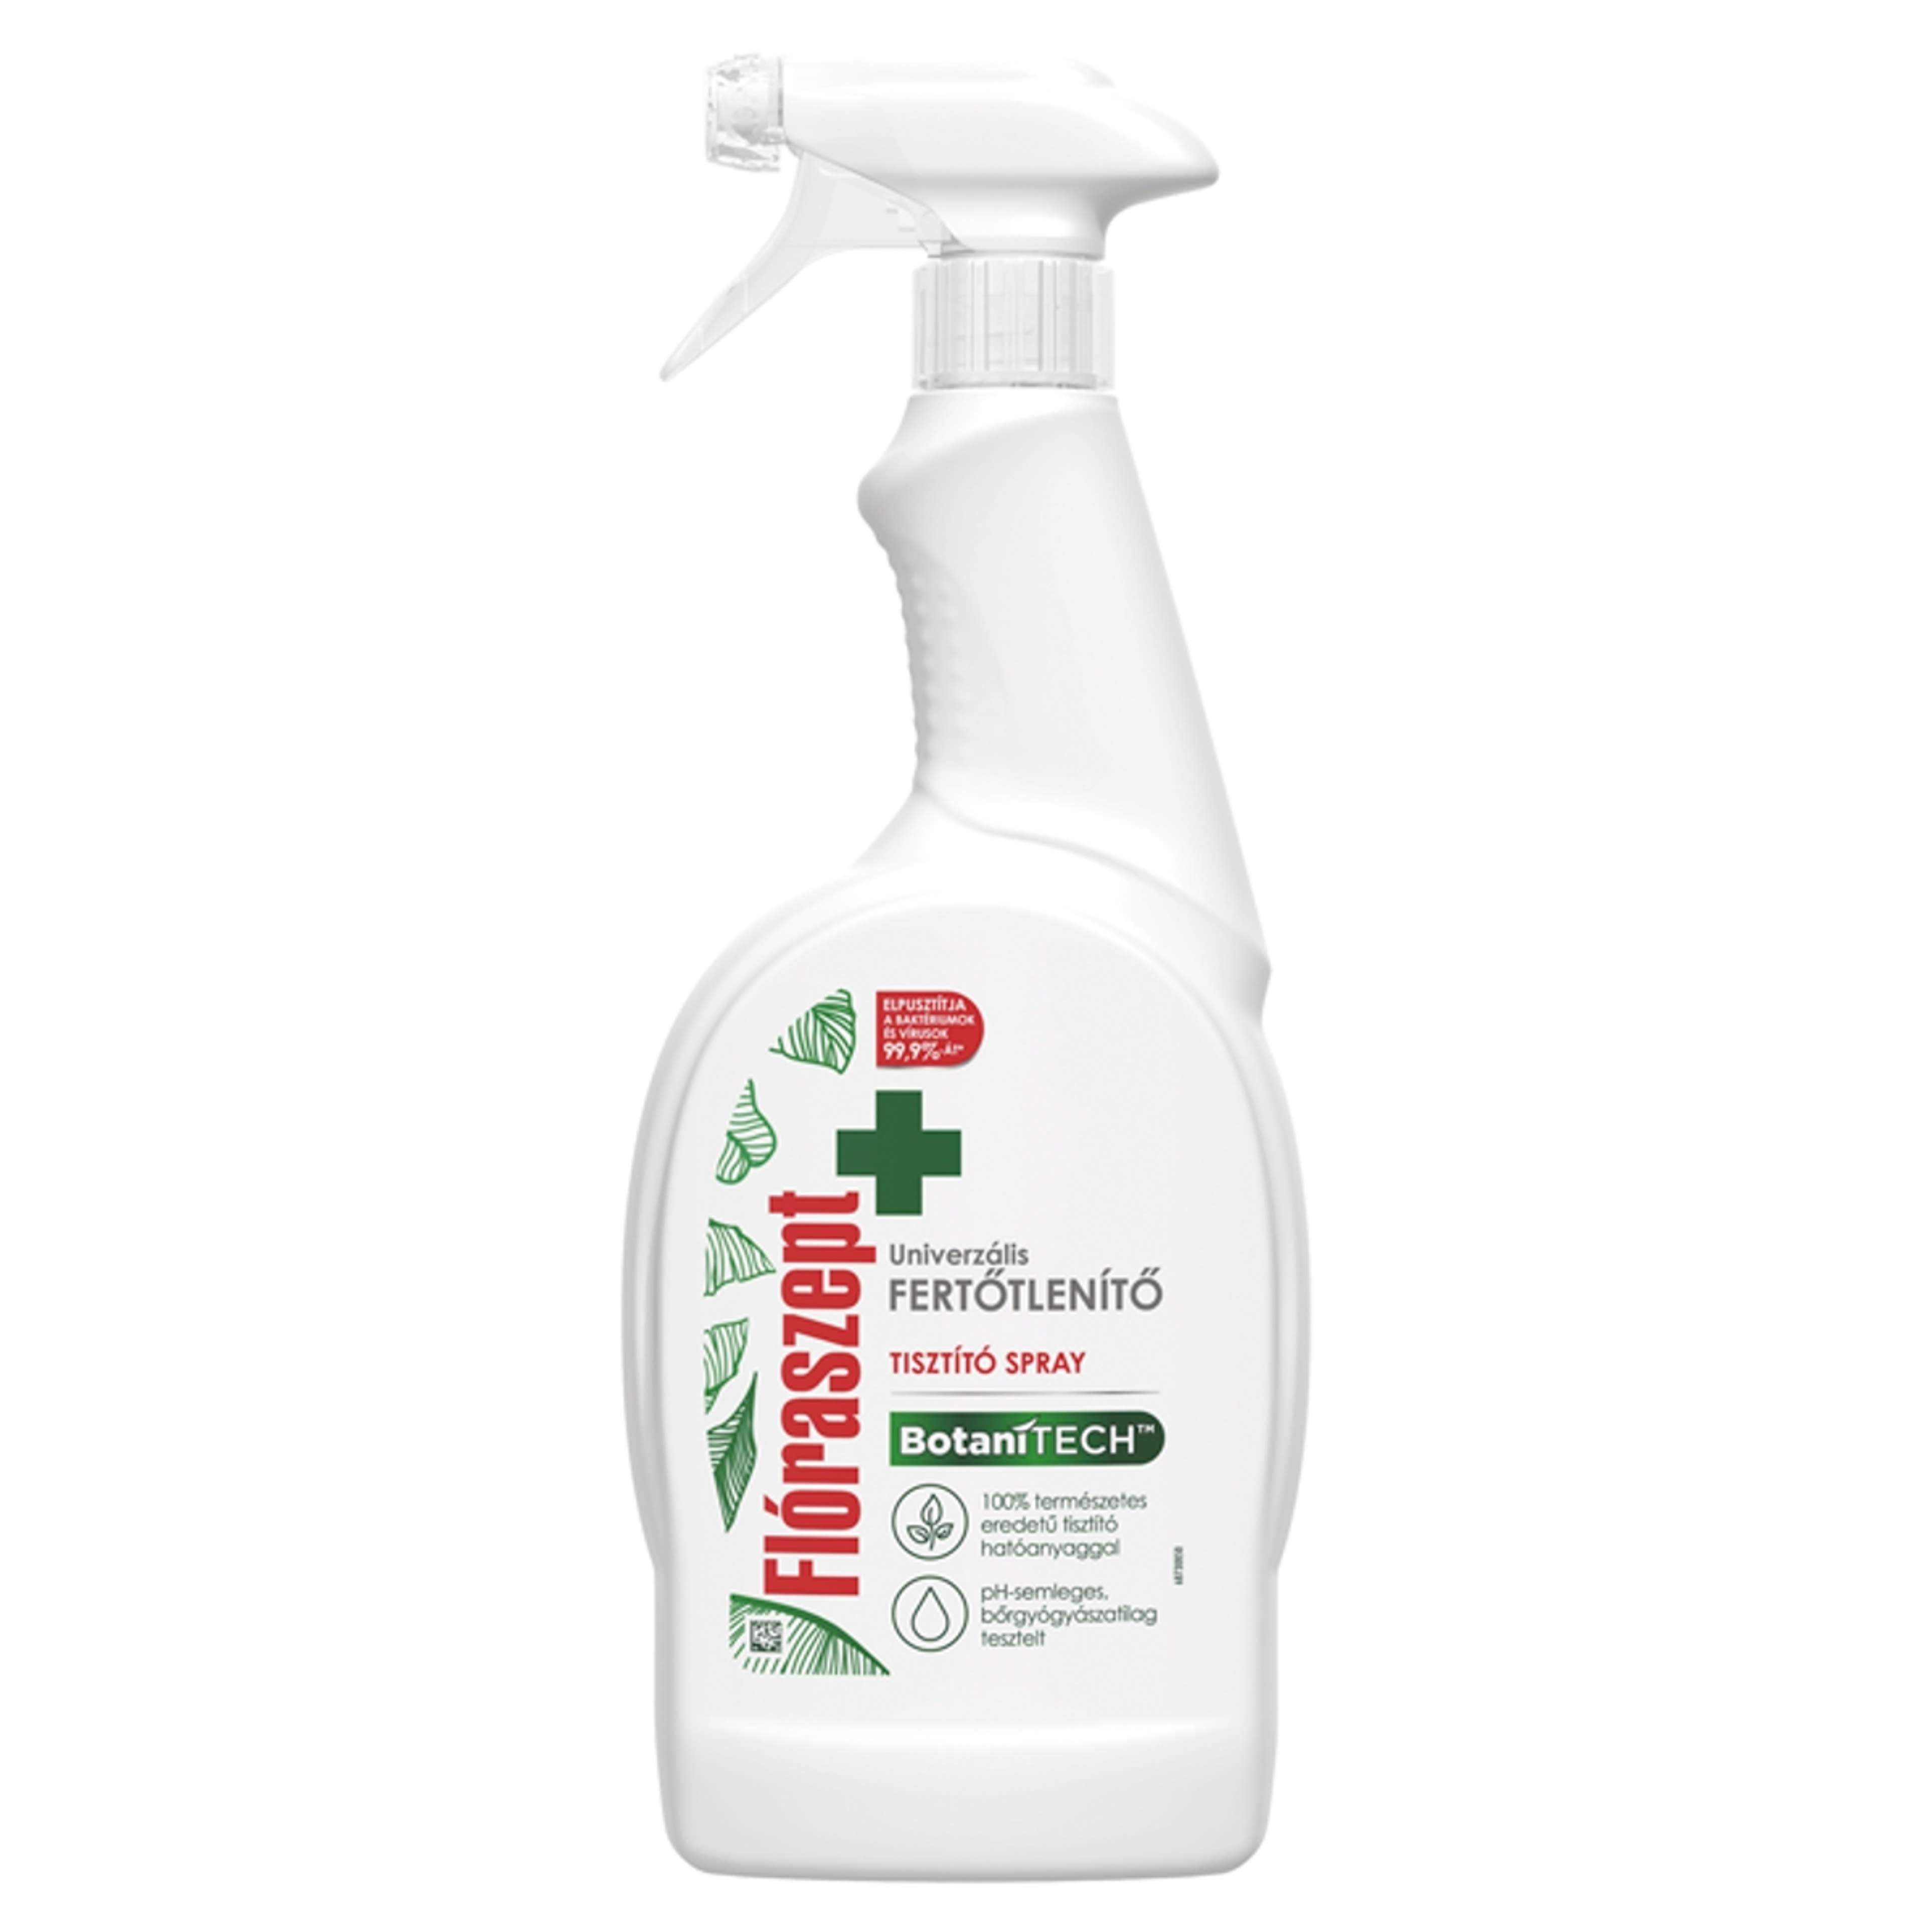 Flóraszept Botanitech univerzális fertőtlenítő spray - 700 ml